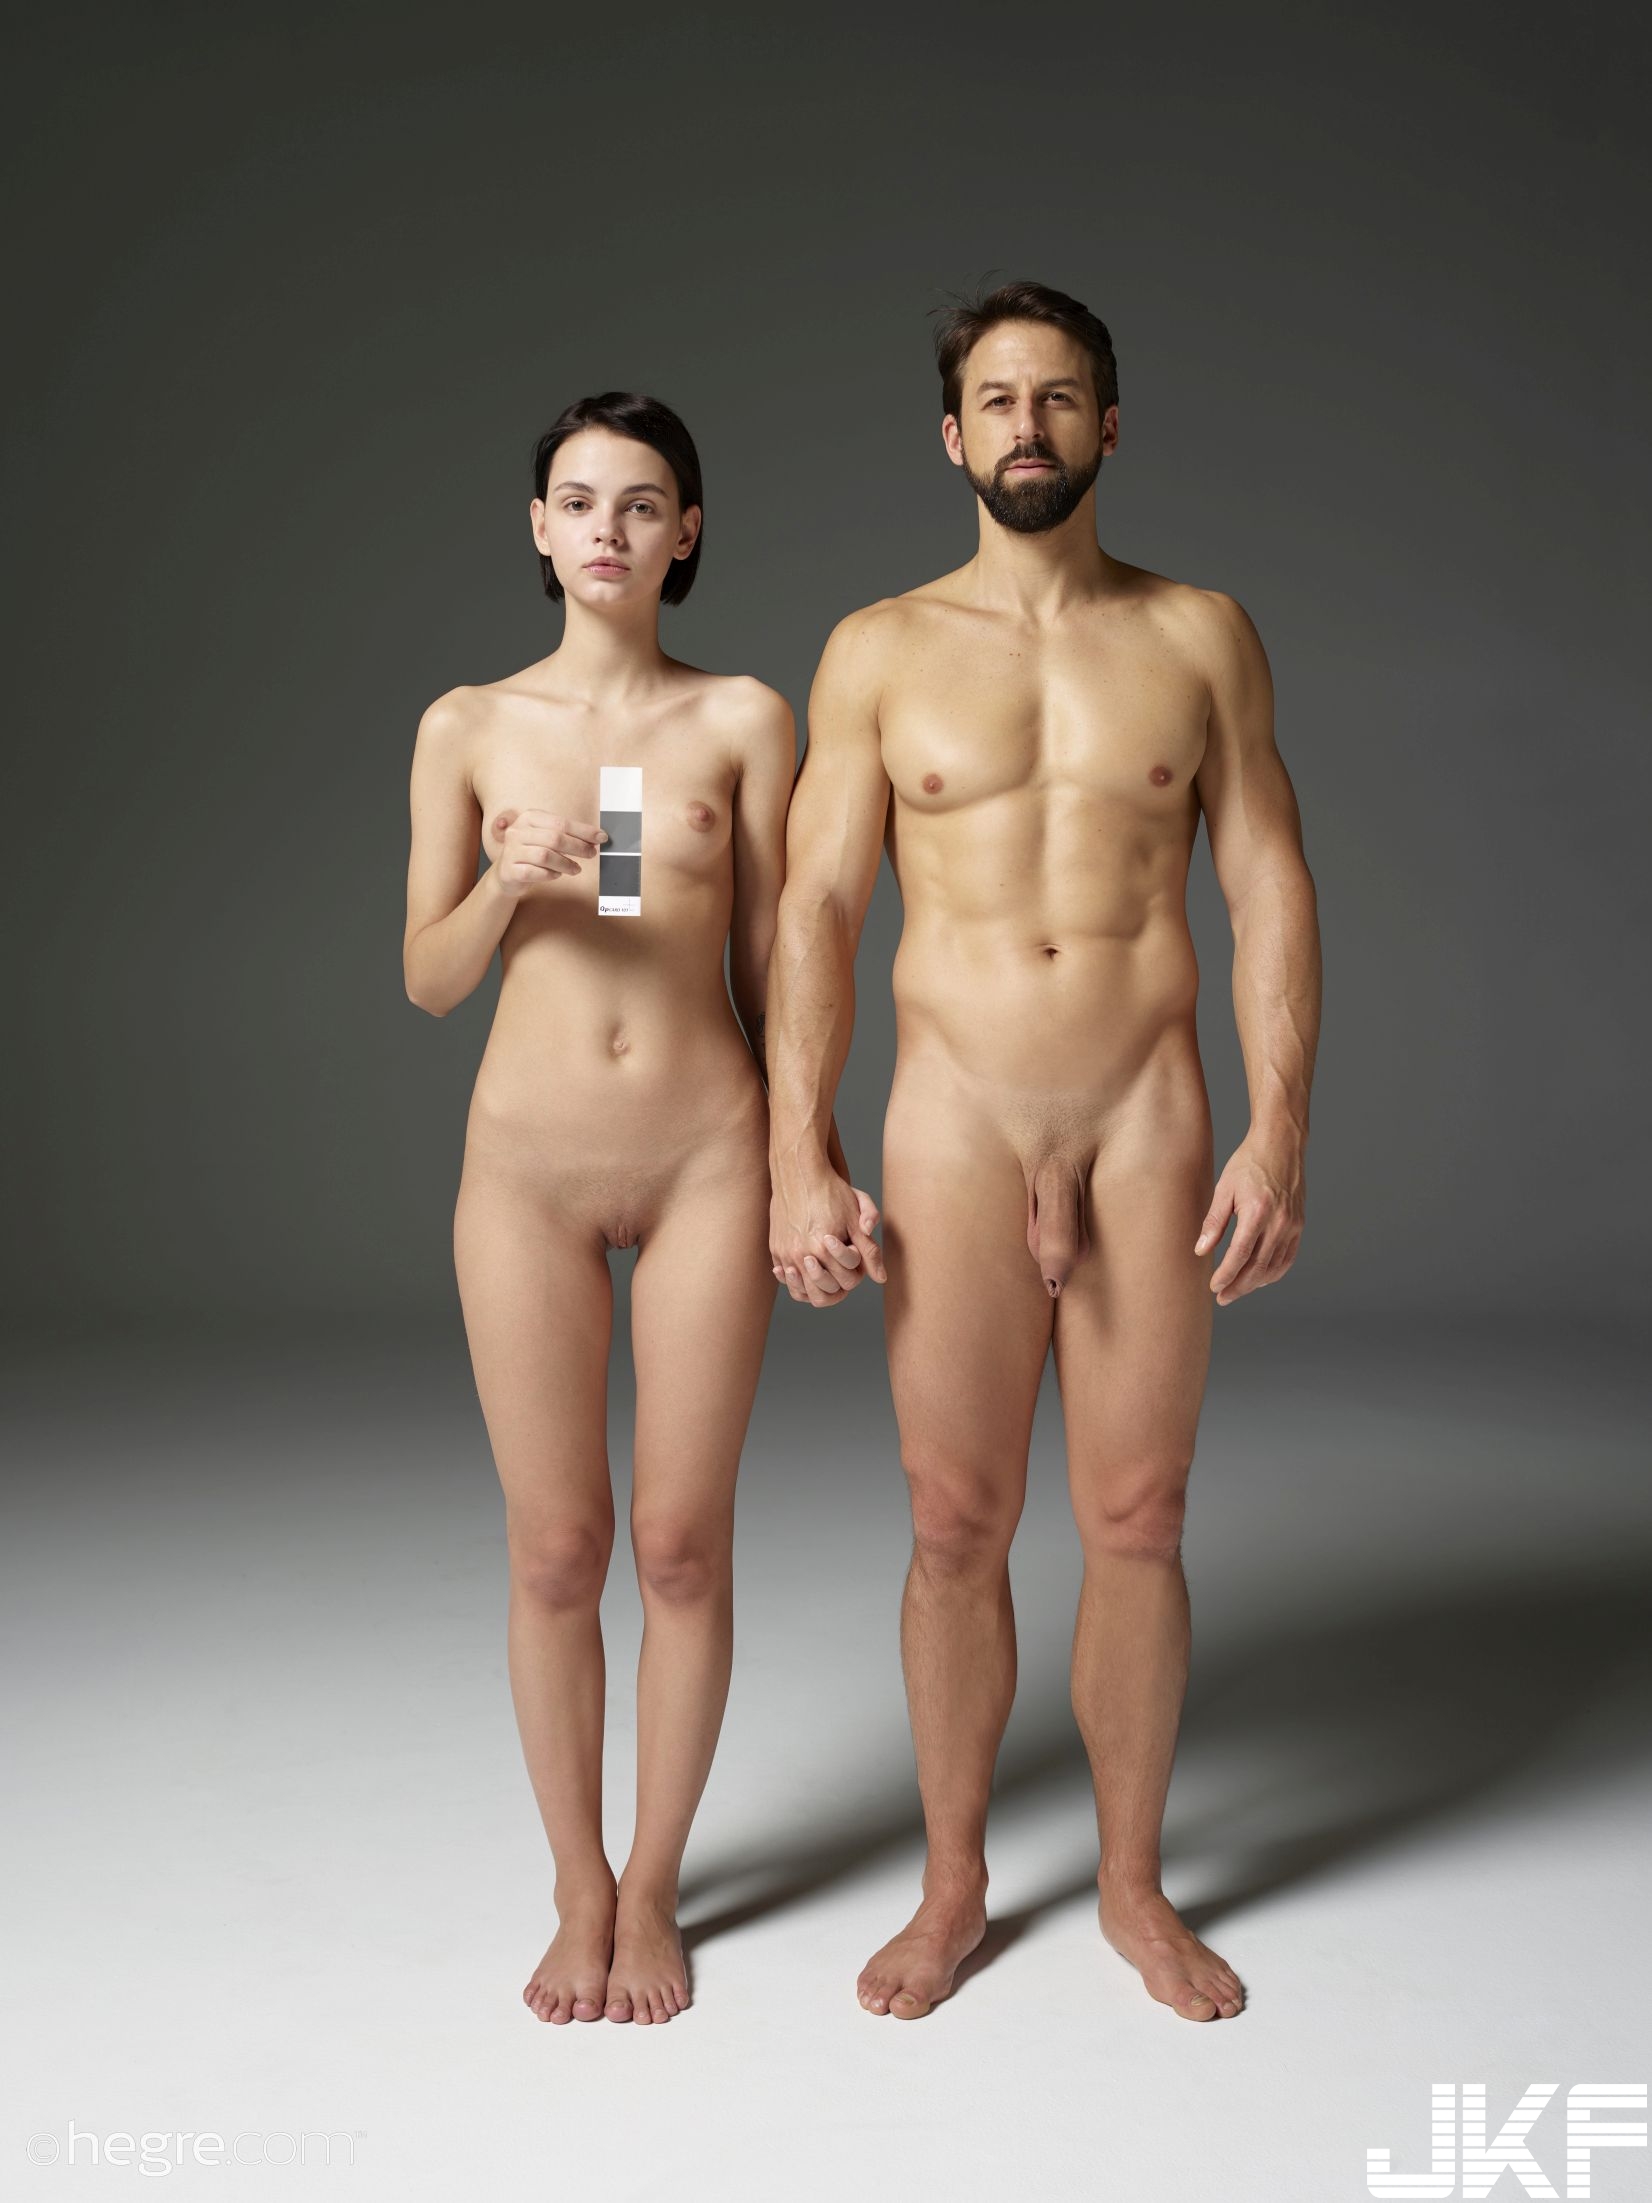 женщины фотографируются с голыми мужиками фото 17